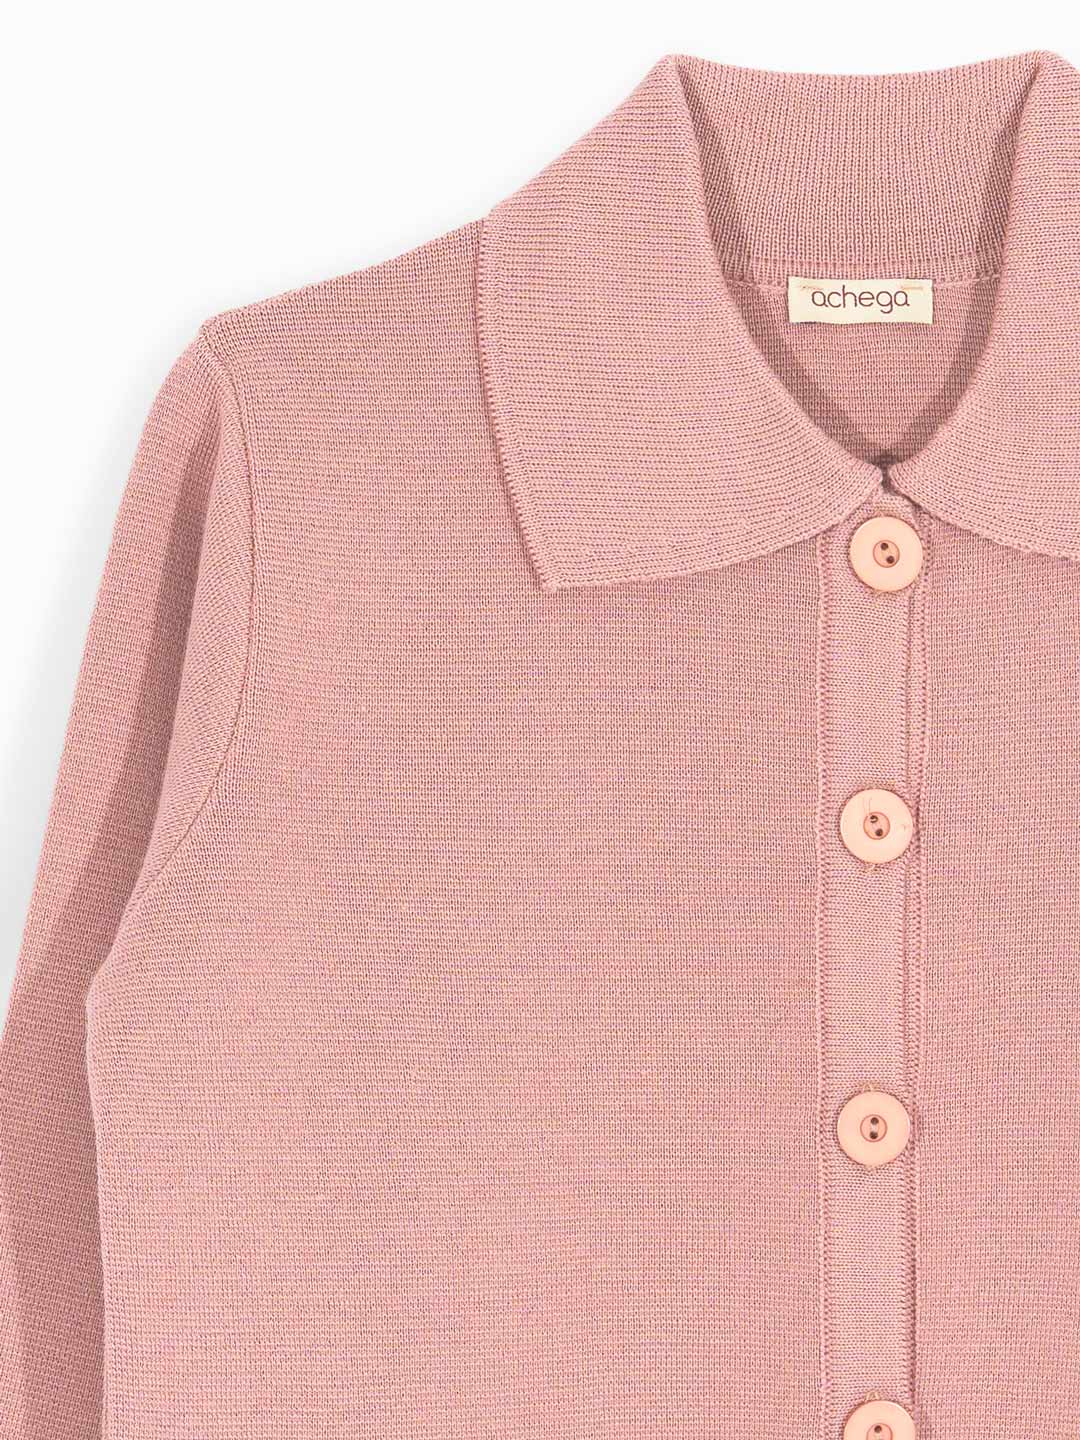 Roma Knit Shirt Collar Coat in Merino Wool